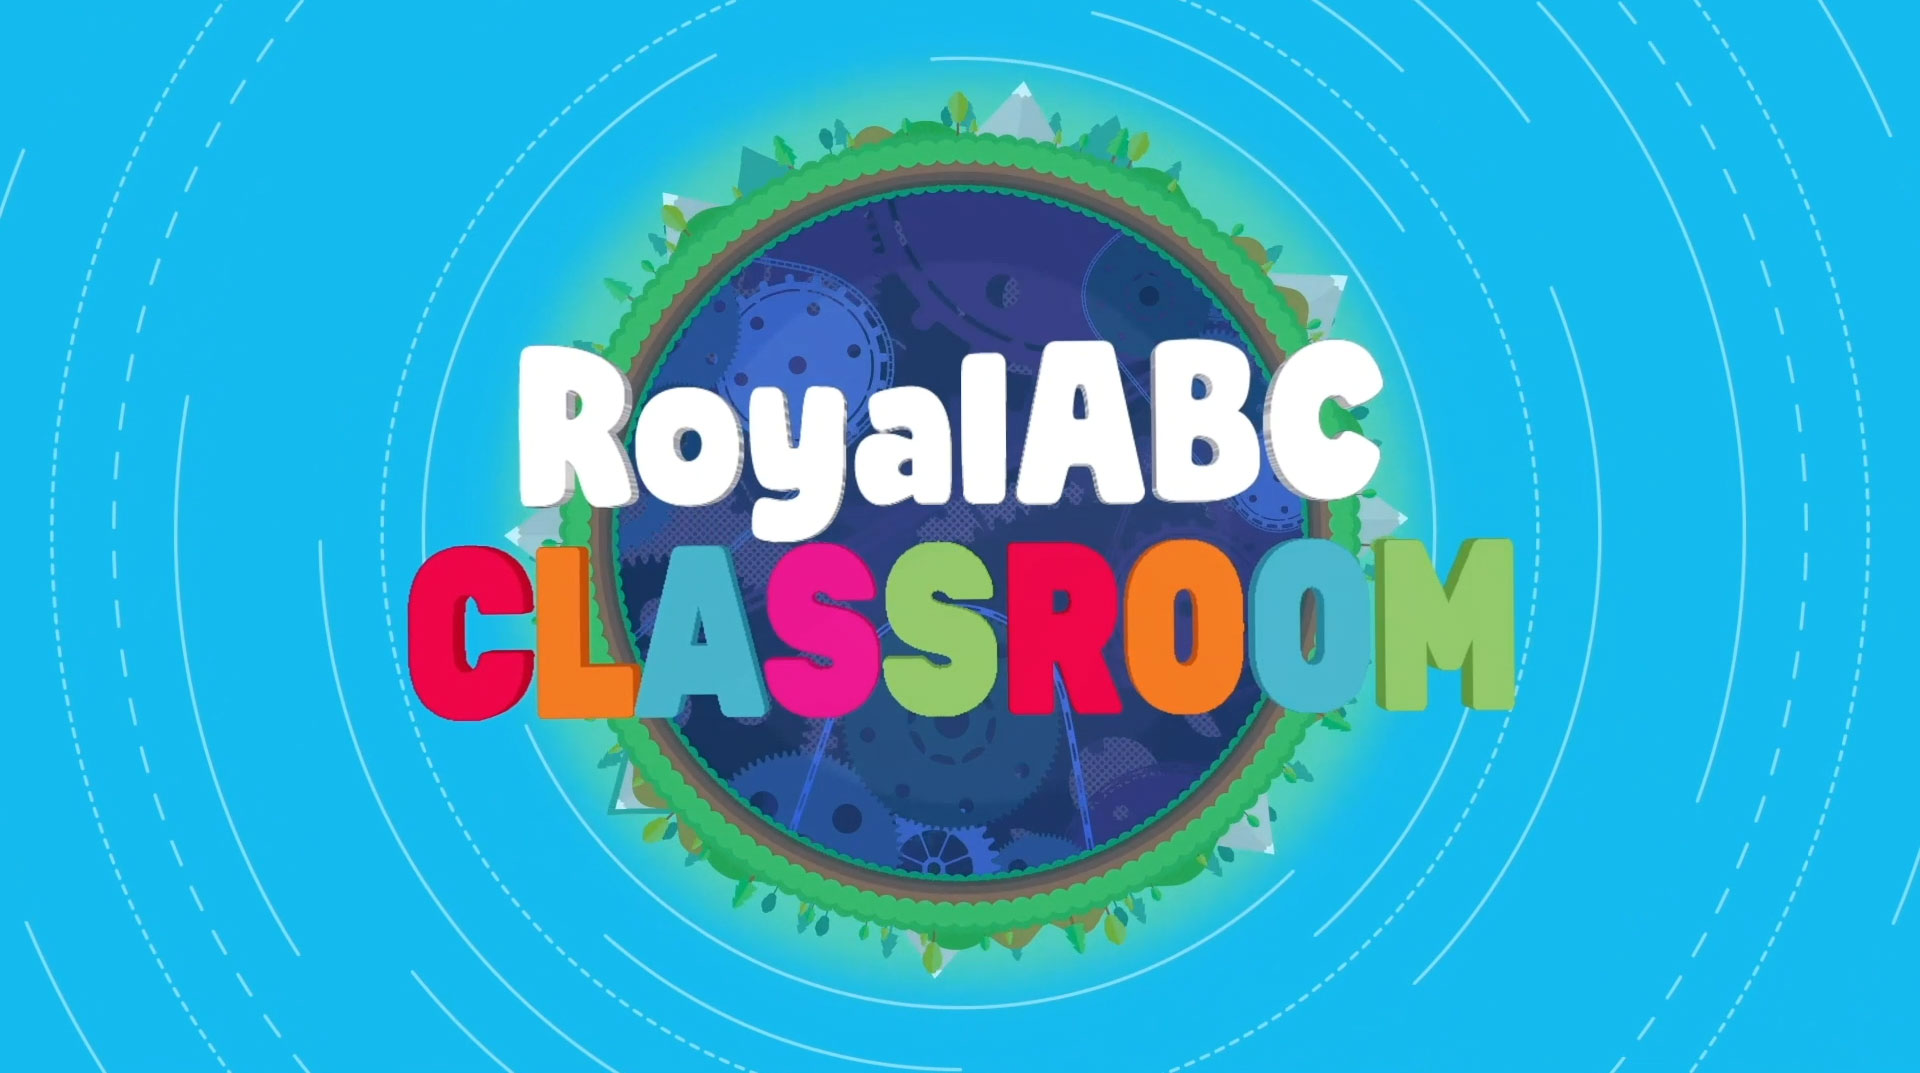 Khám phá cùng RoyalABC các hoạt động giáo dục bổ ích cho trẻ em, giúp phát triển tư duy và kỹ năng tiếng Anh một cách thú vị và hiệu quả. Hãy xem hình ảnh liên quan để tìm hiểu thêm!